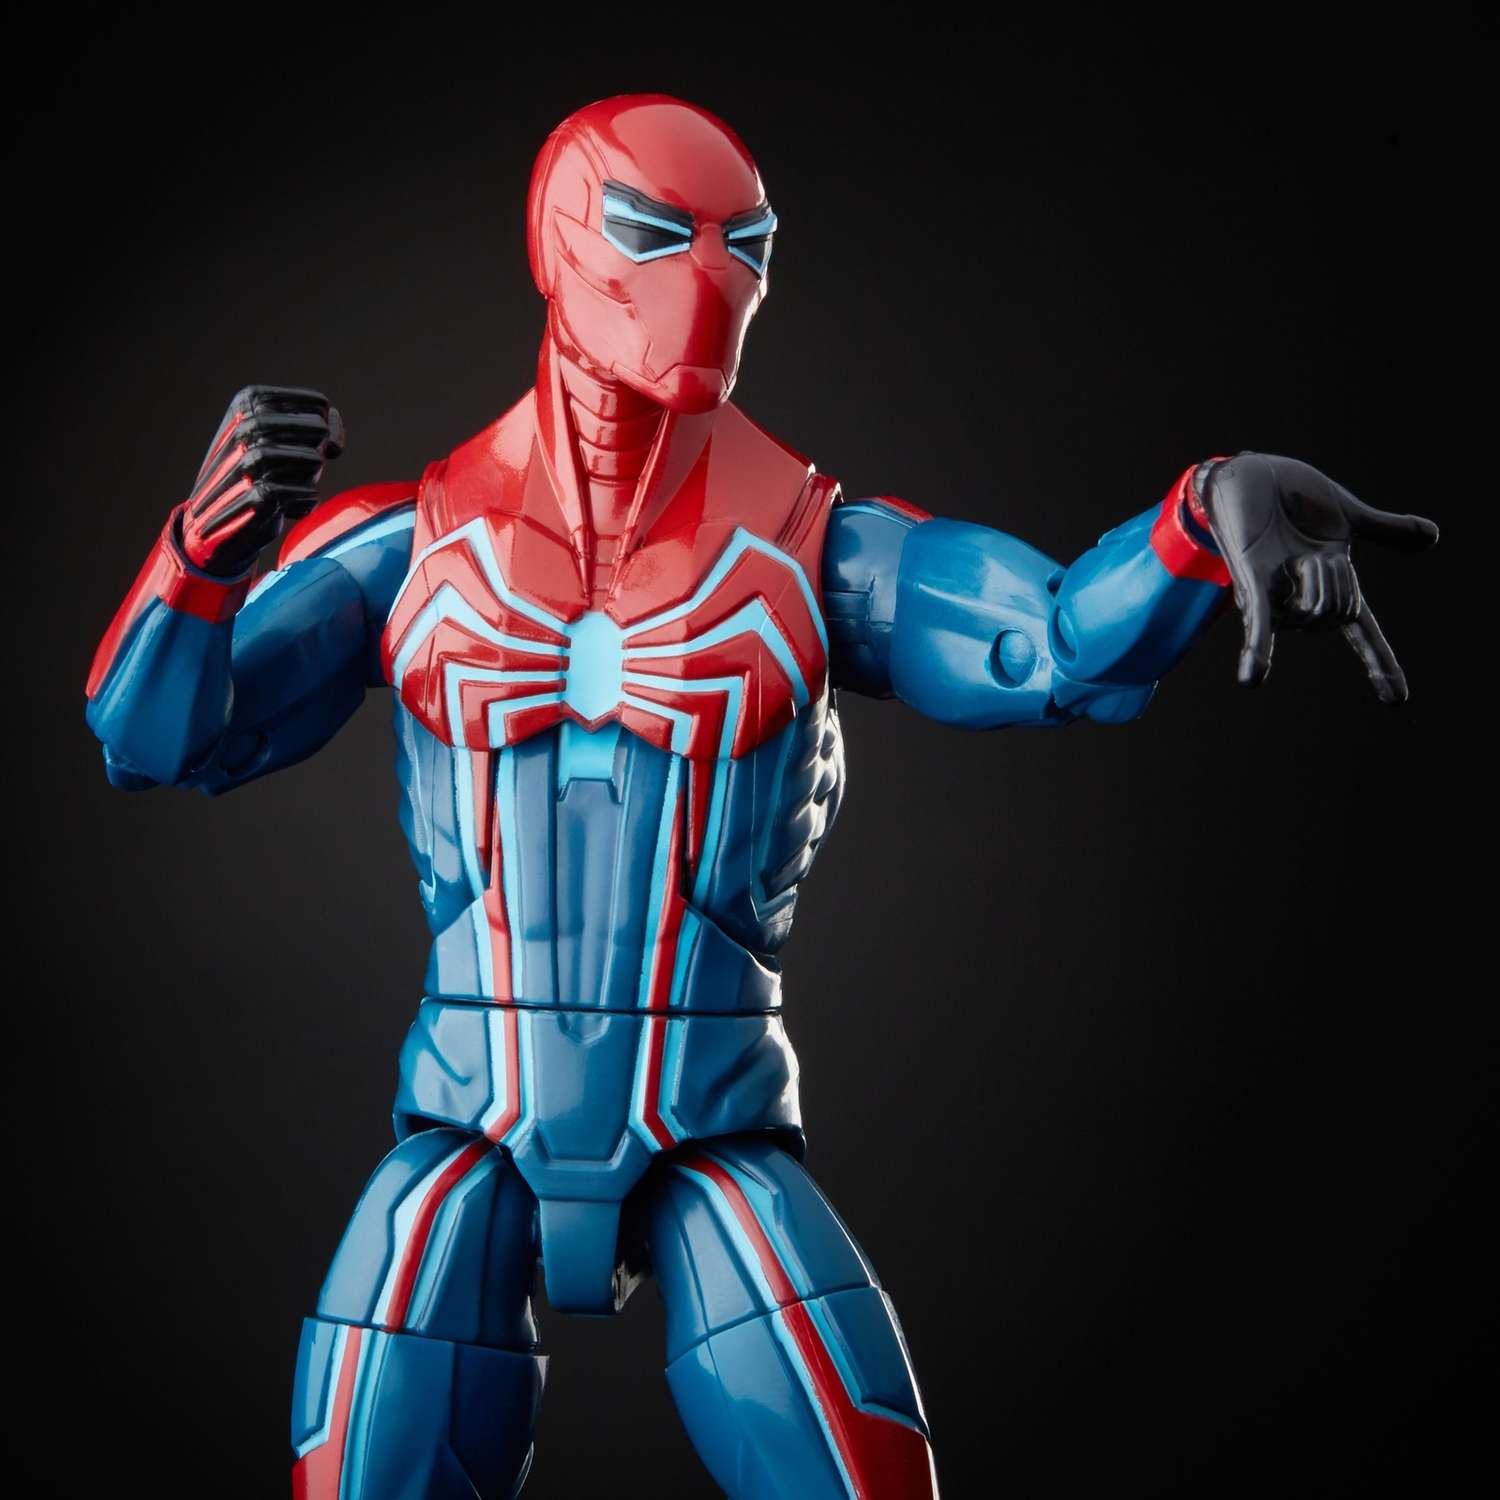 Игрушка Человек-Паук (Spider-man) (SM) Человек-Паук Слатер E81215L0 - фото 7